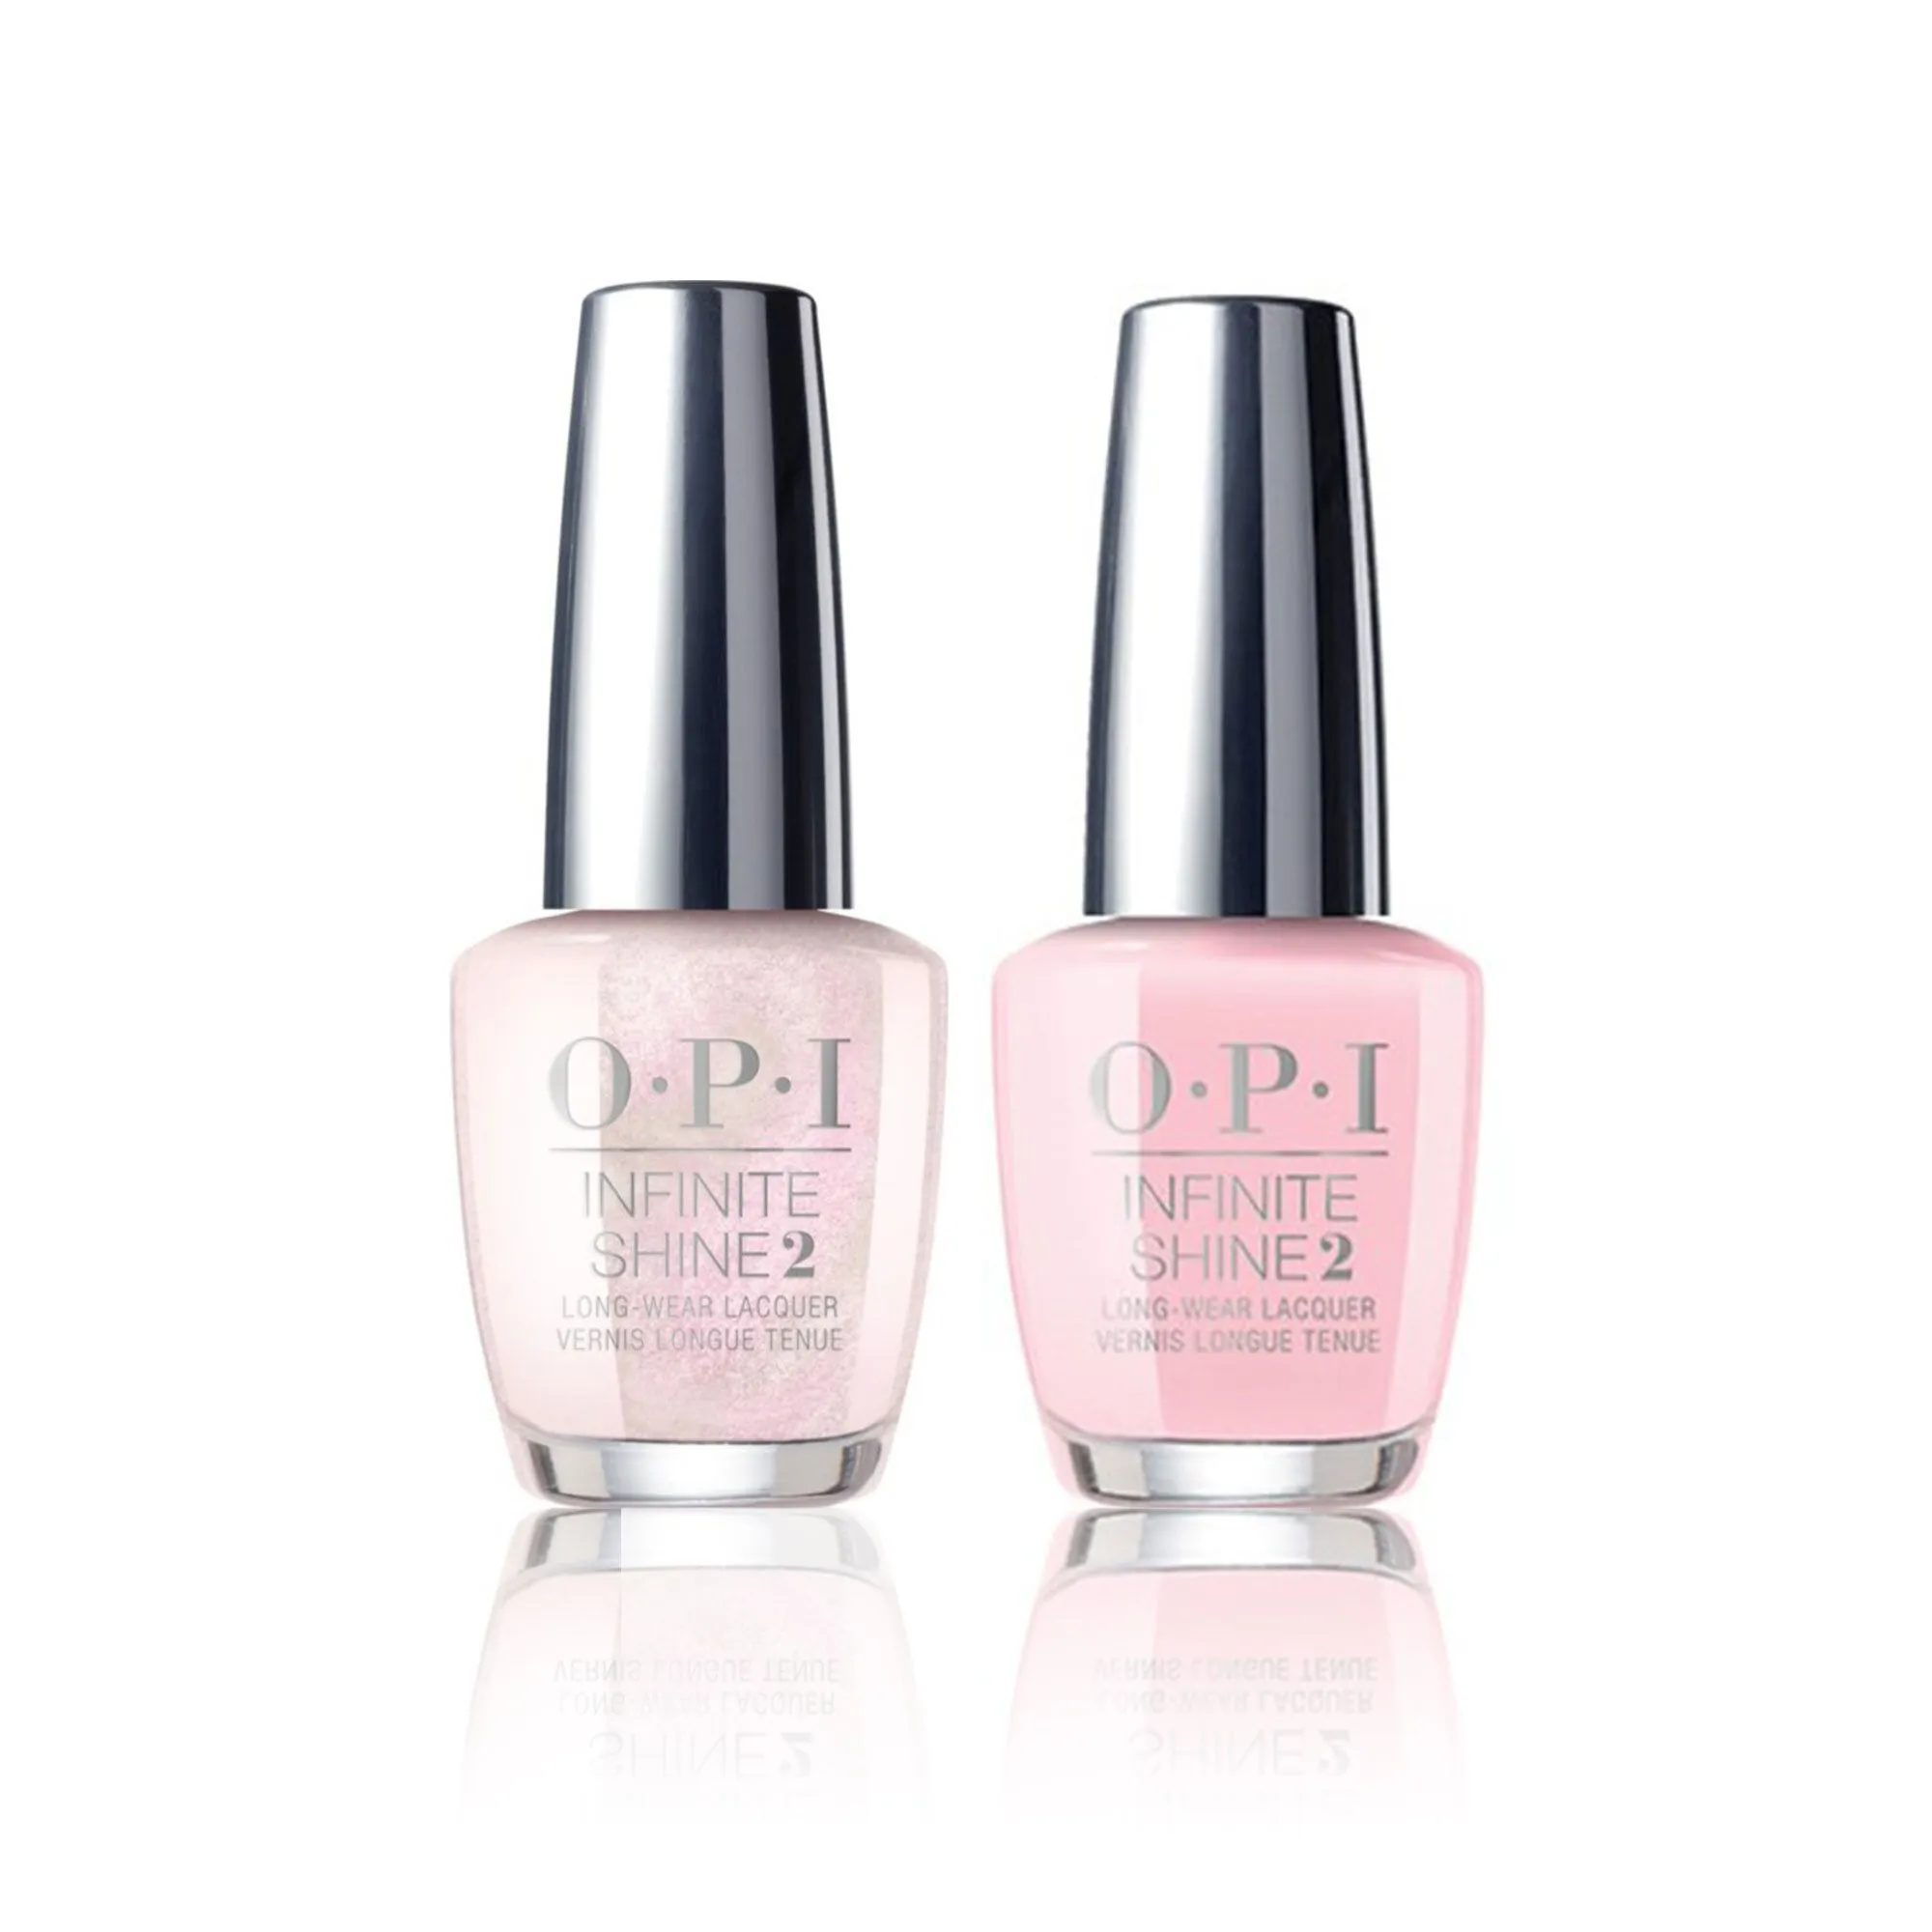 Infinite Shine 2 smalti unghie bianco e rosa nude